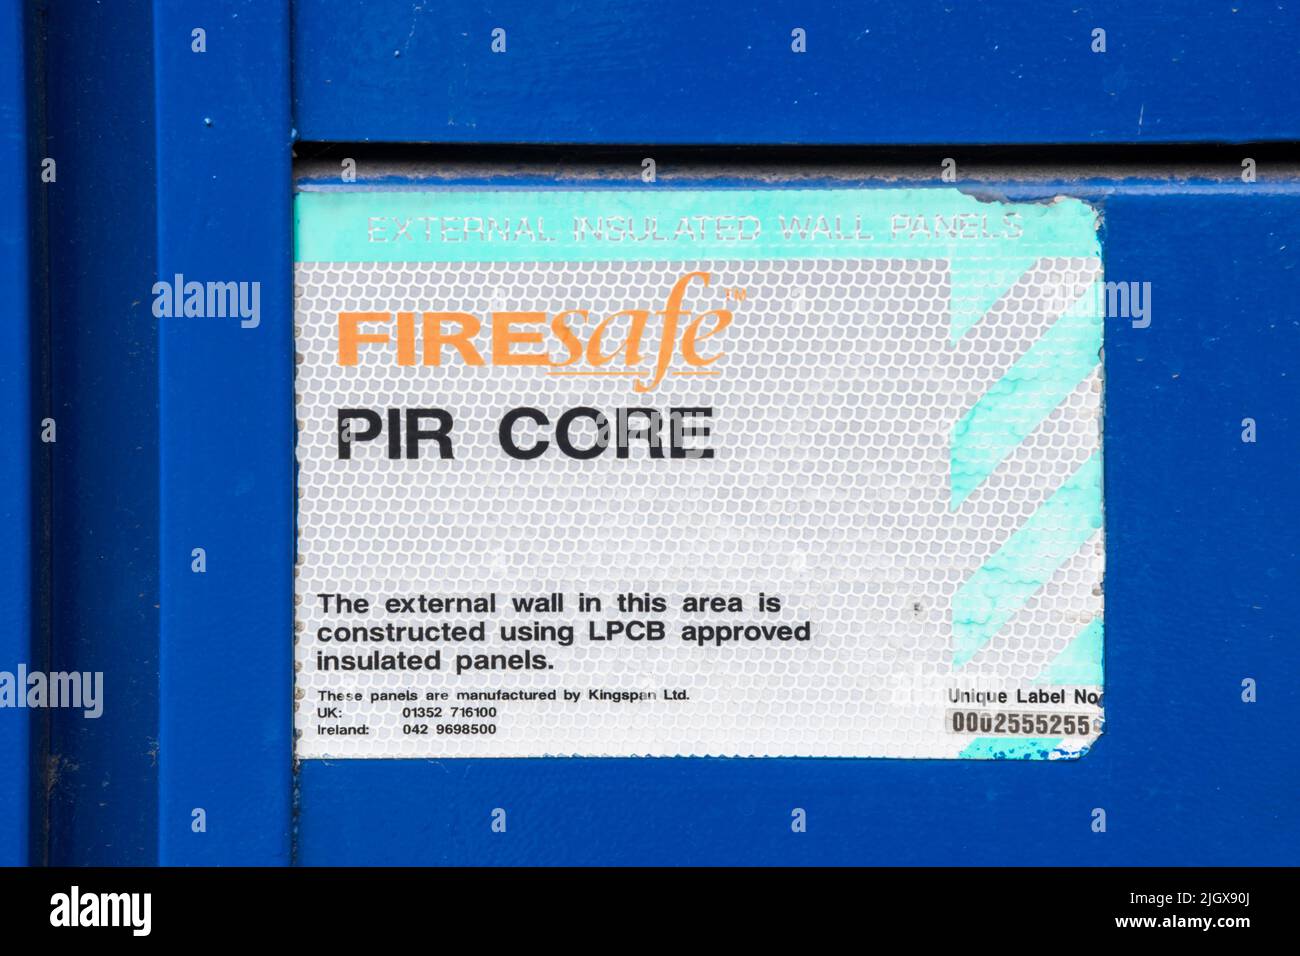 L'étiquette apposée sur le mur du bâtiment indique qu'il est fabriqué à l'aide de panneaux muraux isolés externes Kingspan Firesafe à noyau IRP approuvés par LPCB. Banque D'Images